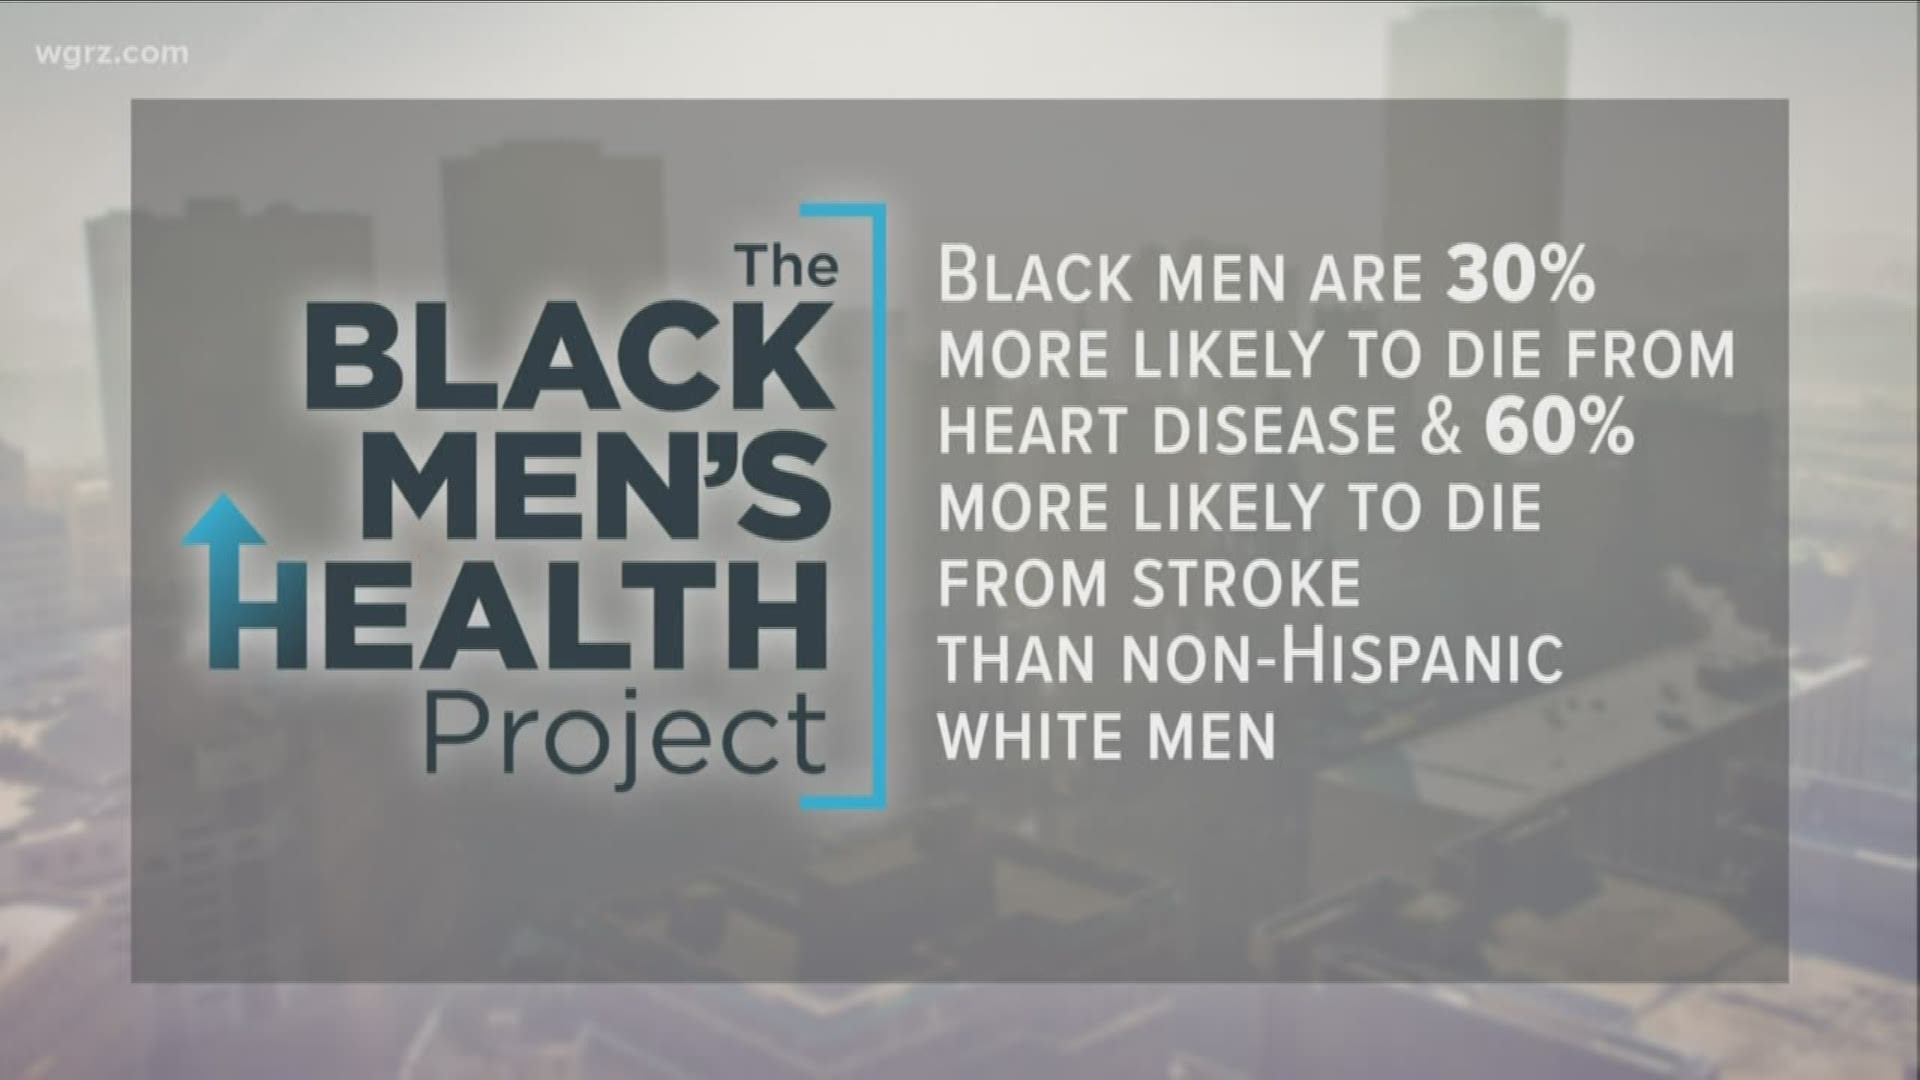 Breaking the myth on black men's health